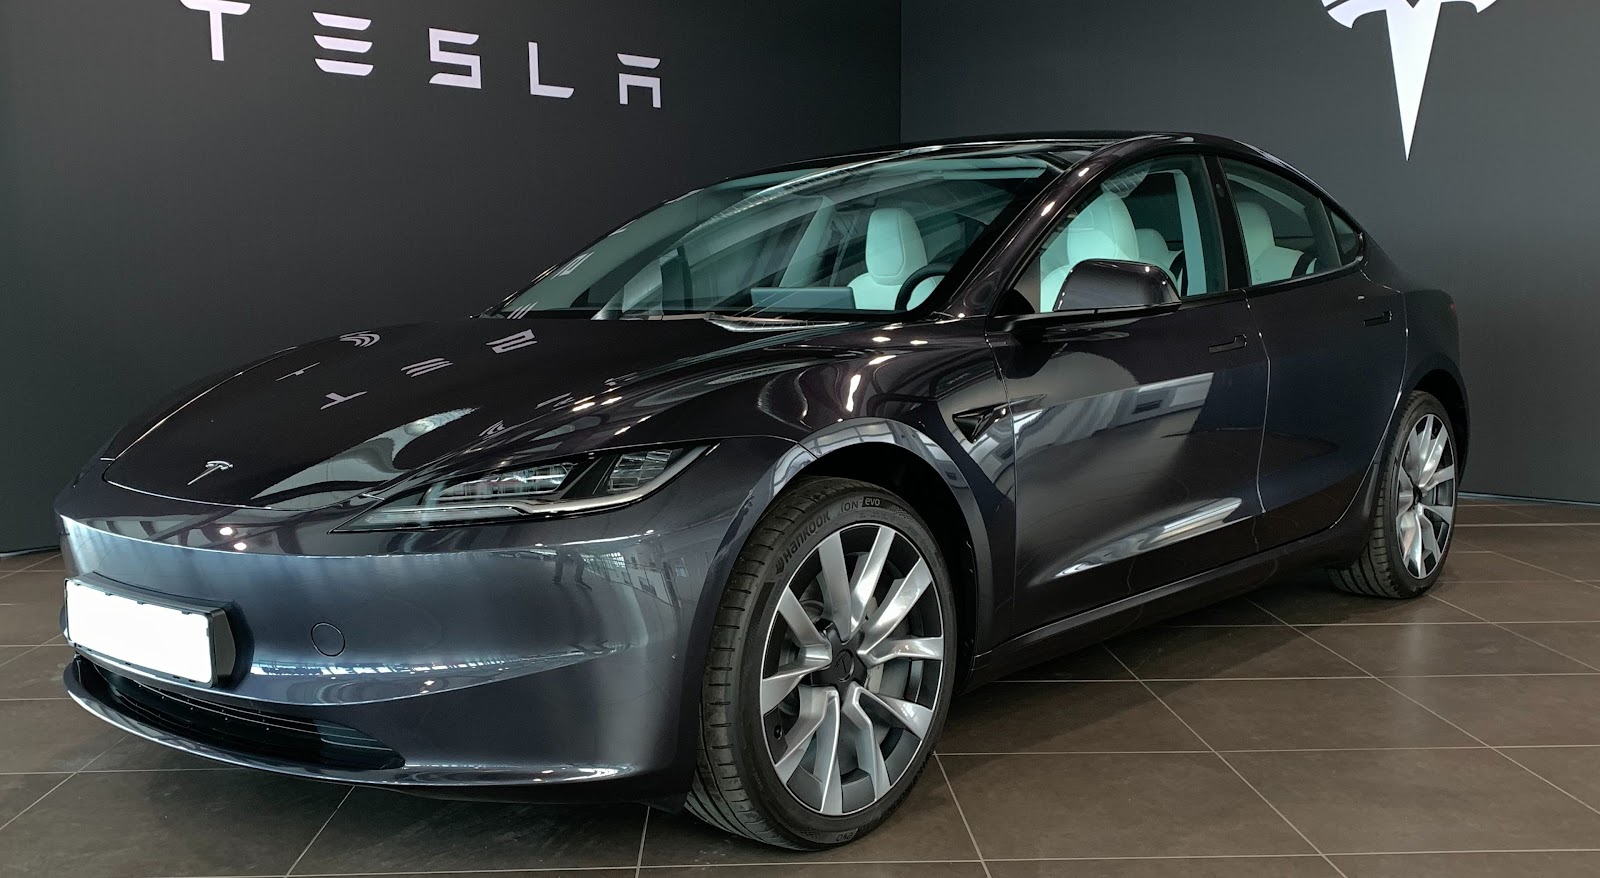 Fotografía de un Tesla Model 3, un ejemplo de la tecnología punta en vehículos autónomos. Autibild.es